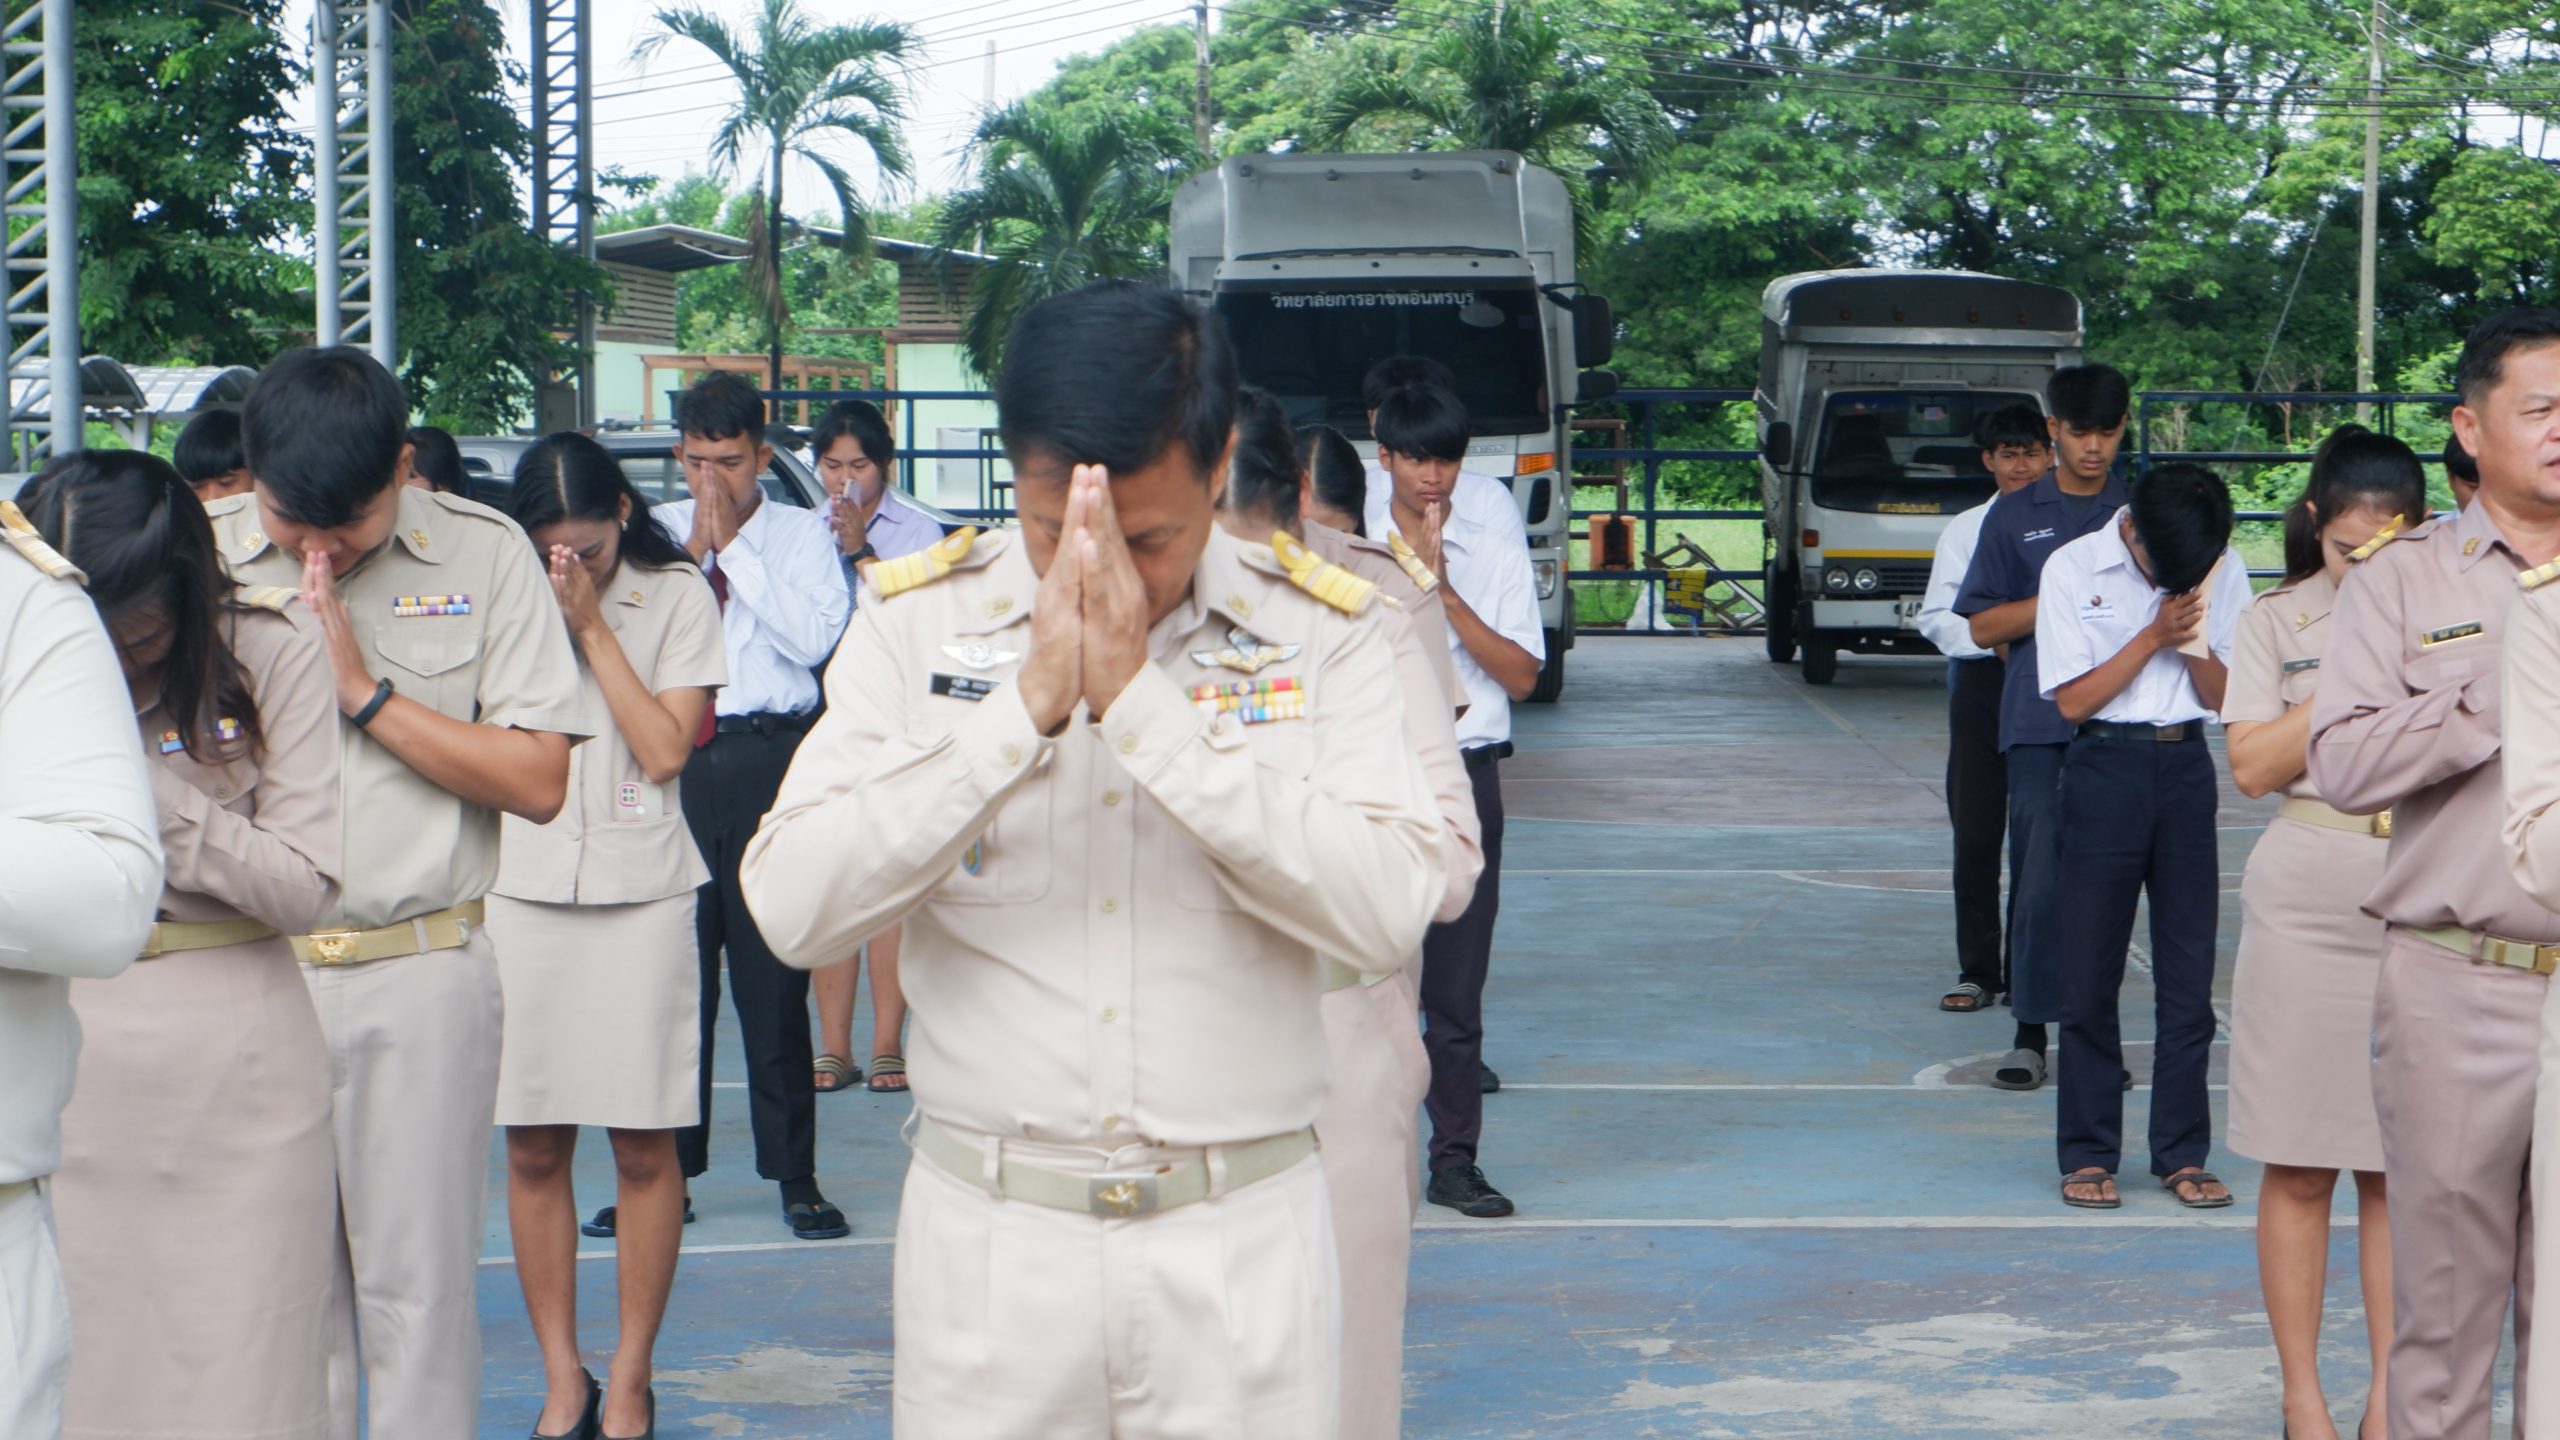 คณะผู้บริหาร ครู บุคลากรทางการศึกษา และนักเรียนนักศึกษา วิทยาลัยการอาชีพอินทร์บุรี จัดกิจกรรมเคารพธงชาติ และร้องเพลงชาติไทย เนื่องในวันพระราชทานธงชาติไทย